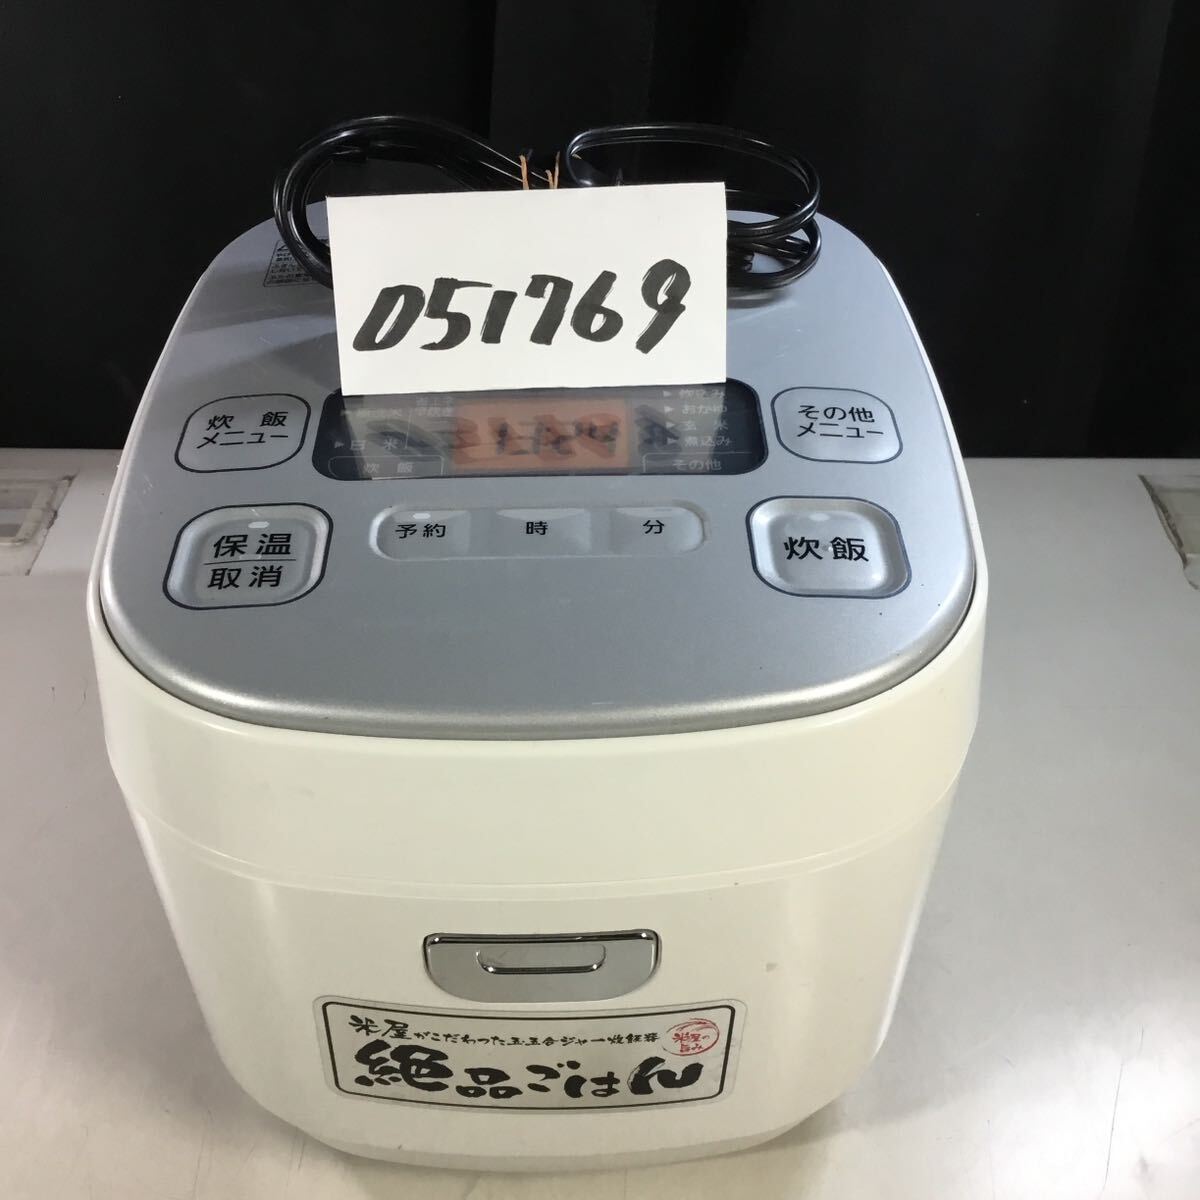 【送料無料】(051769G) アイリスオーヤマ DKERC-MA50-S 2020年製 炊飯ジャー 5.5合炊き 中古品 絶品ごはん _画像1